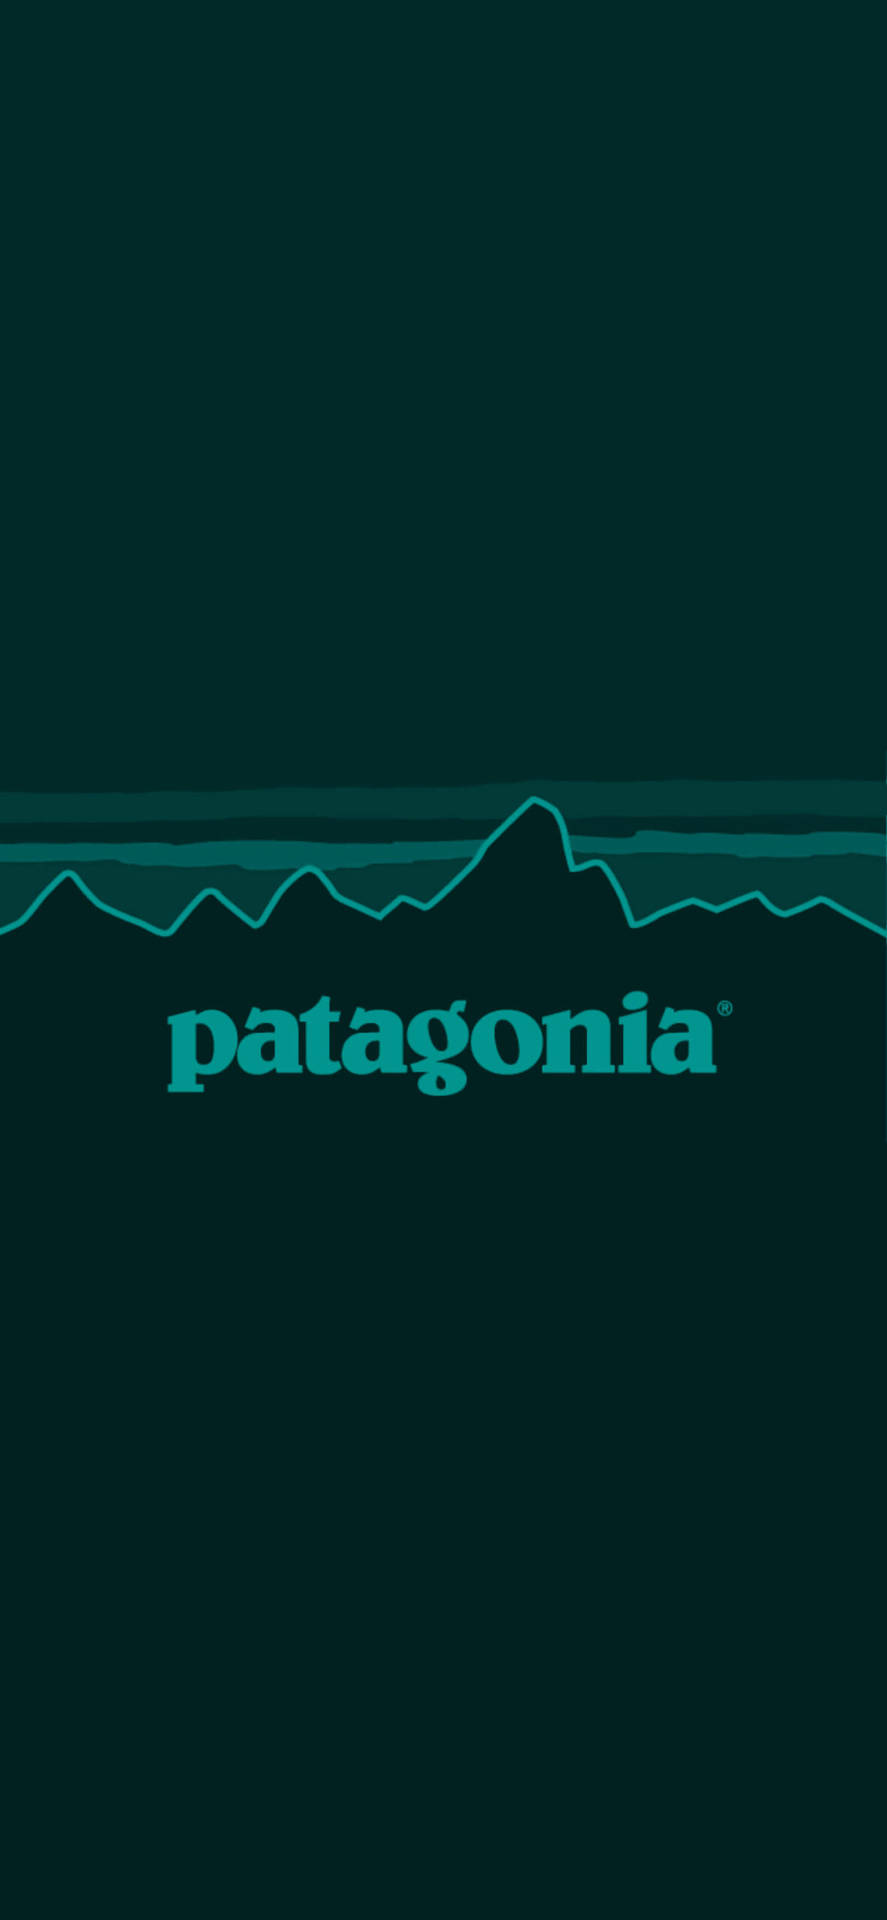 Patagonia Green Logo Background